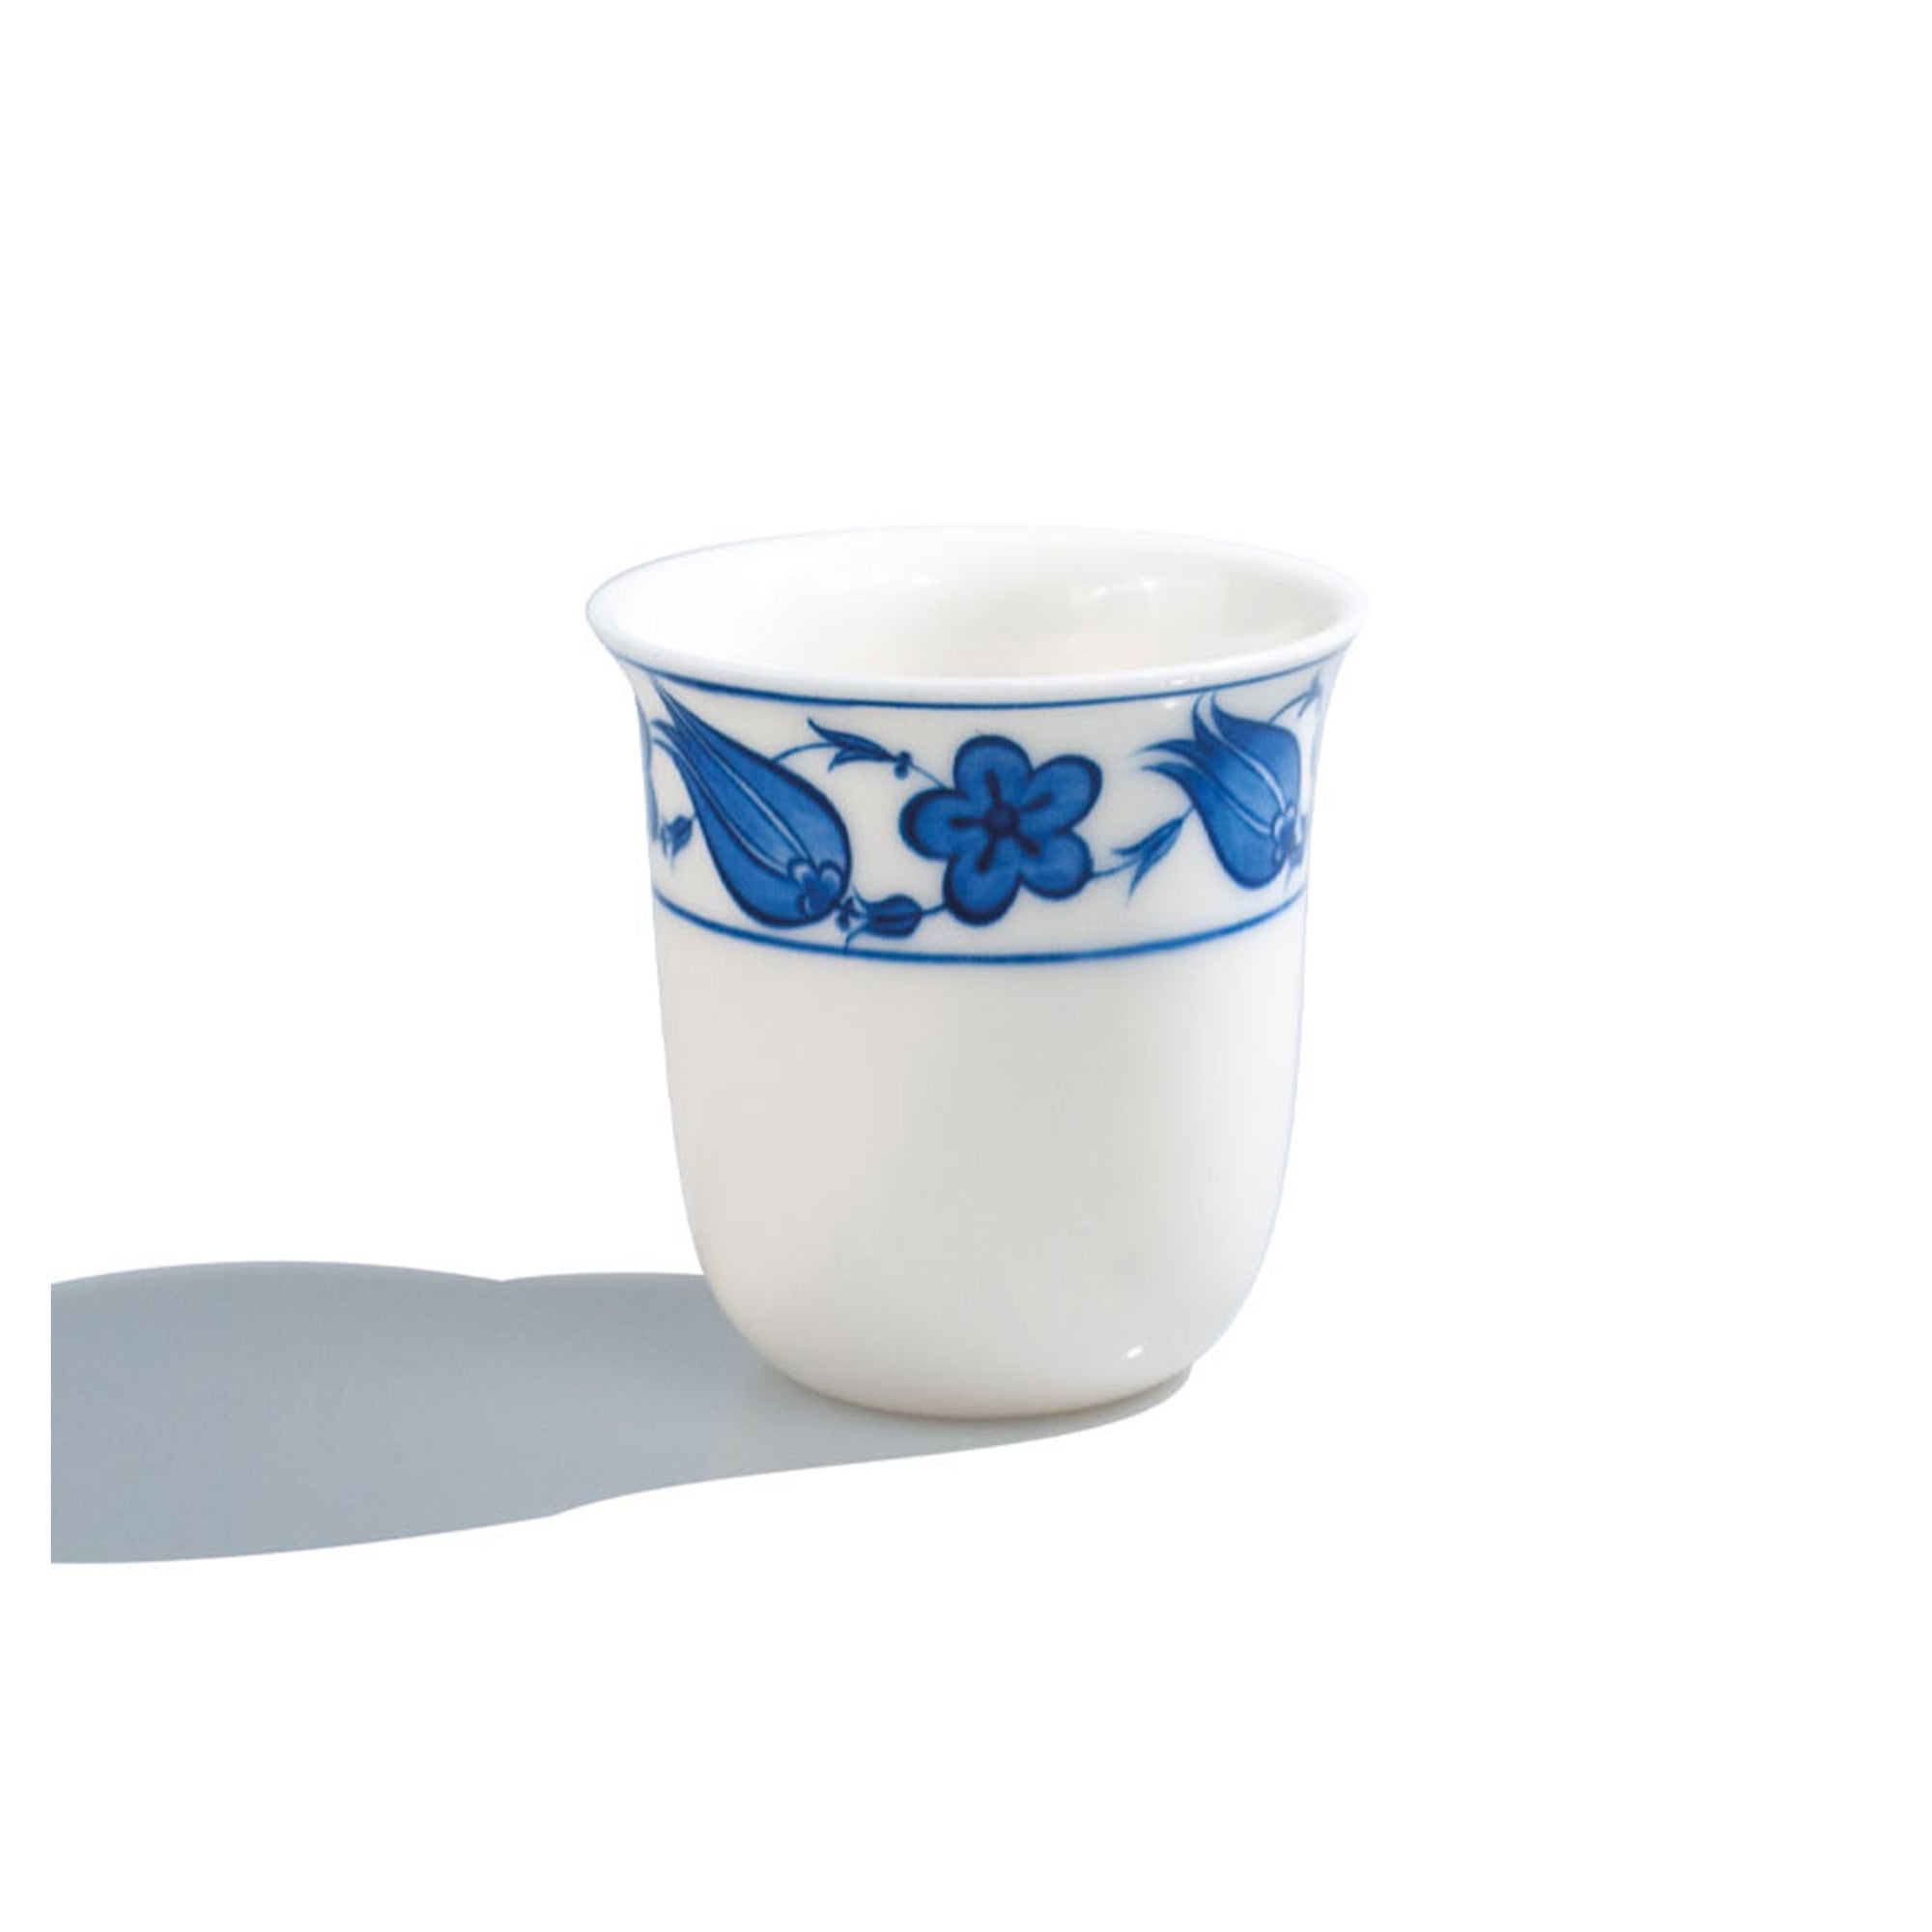 Tulip pattern transparent porcelain cup